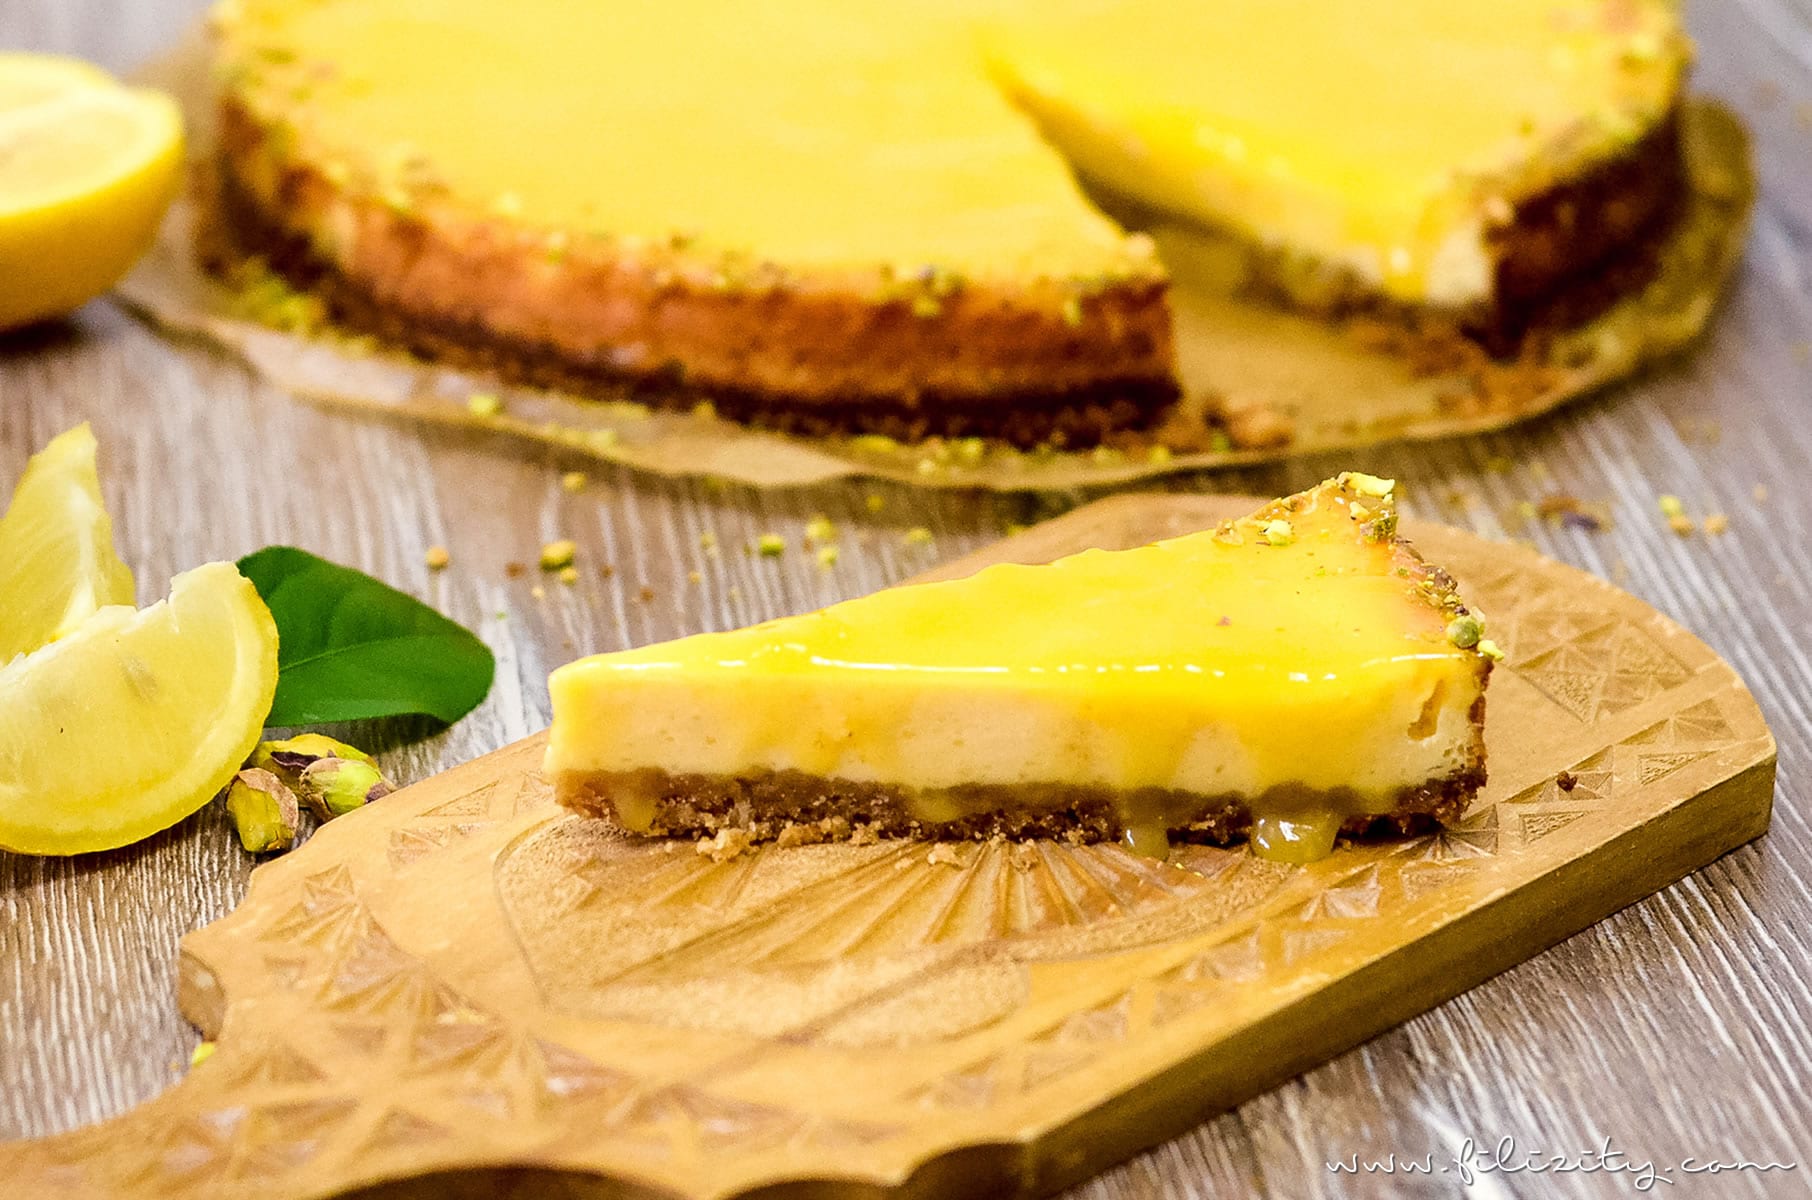 Rezept: Lemon Curd Cheesecake - Sommerfrischer Käsekuchen mit Zitronencreme | Filizity.com | Food-Blog aus dem Rheinland #cheesecake #käsekuchen #lemoncurd